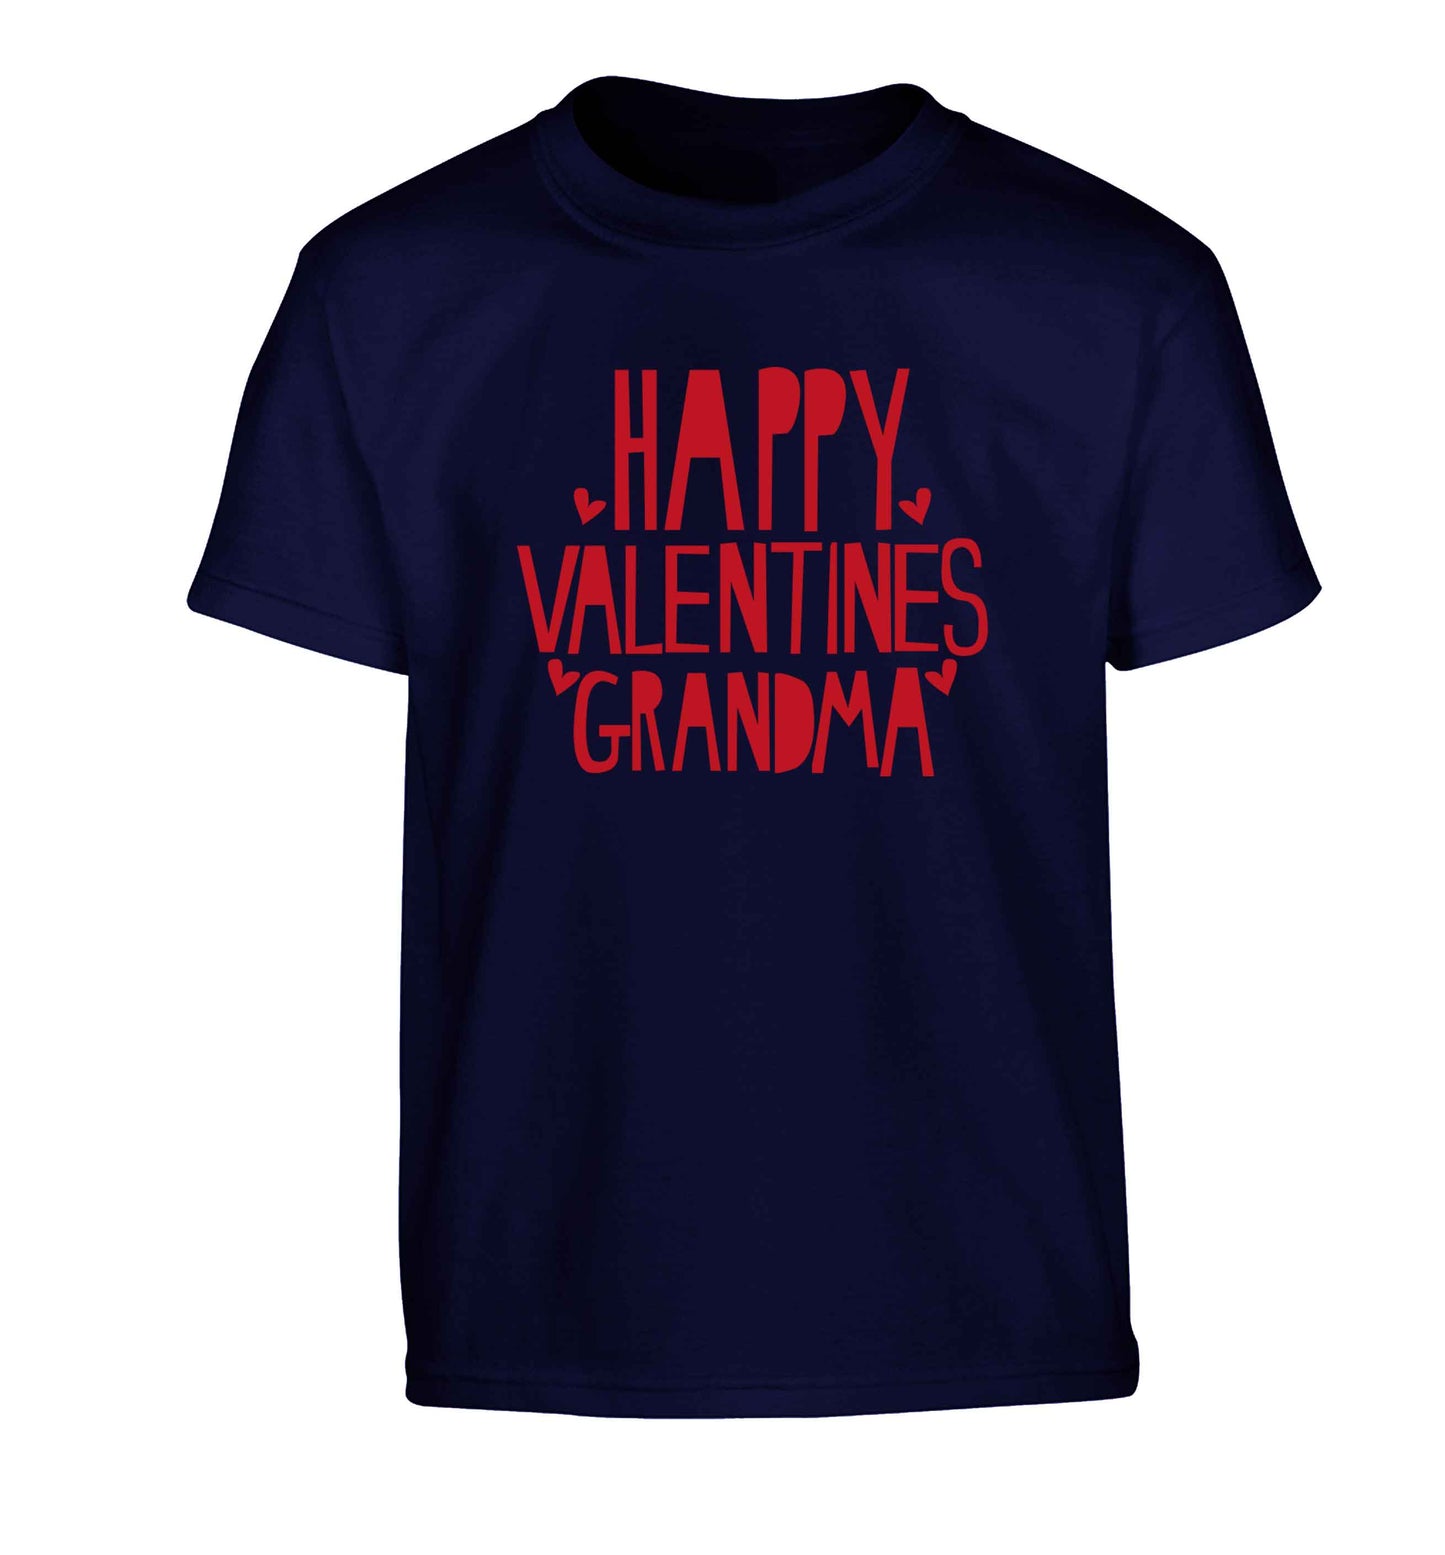 Happy valentines grandma Children's navy Tshirt 12-13 Years